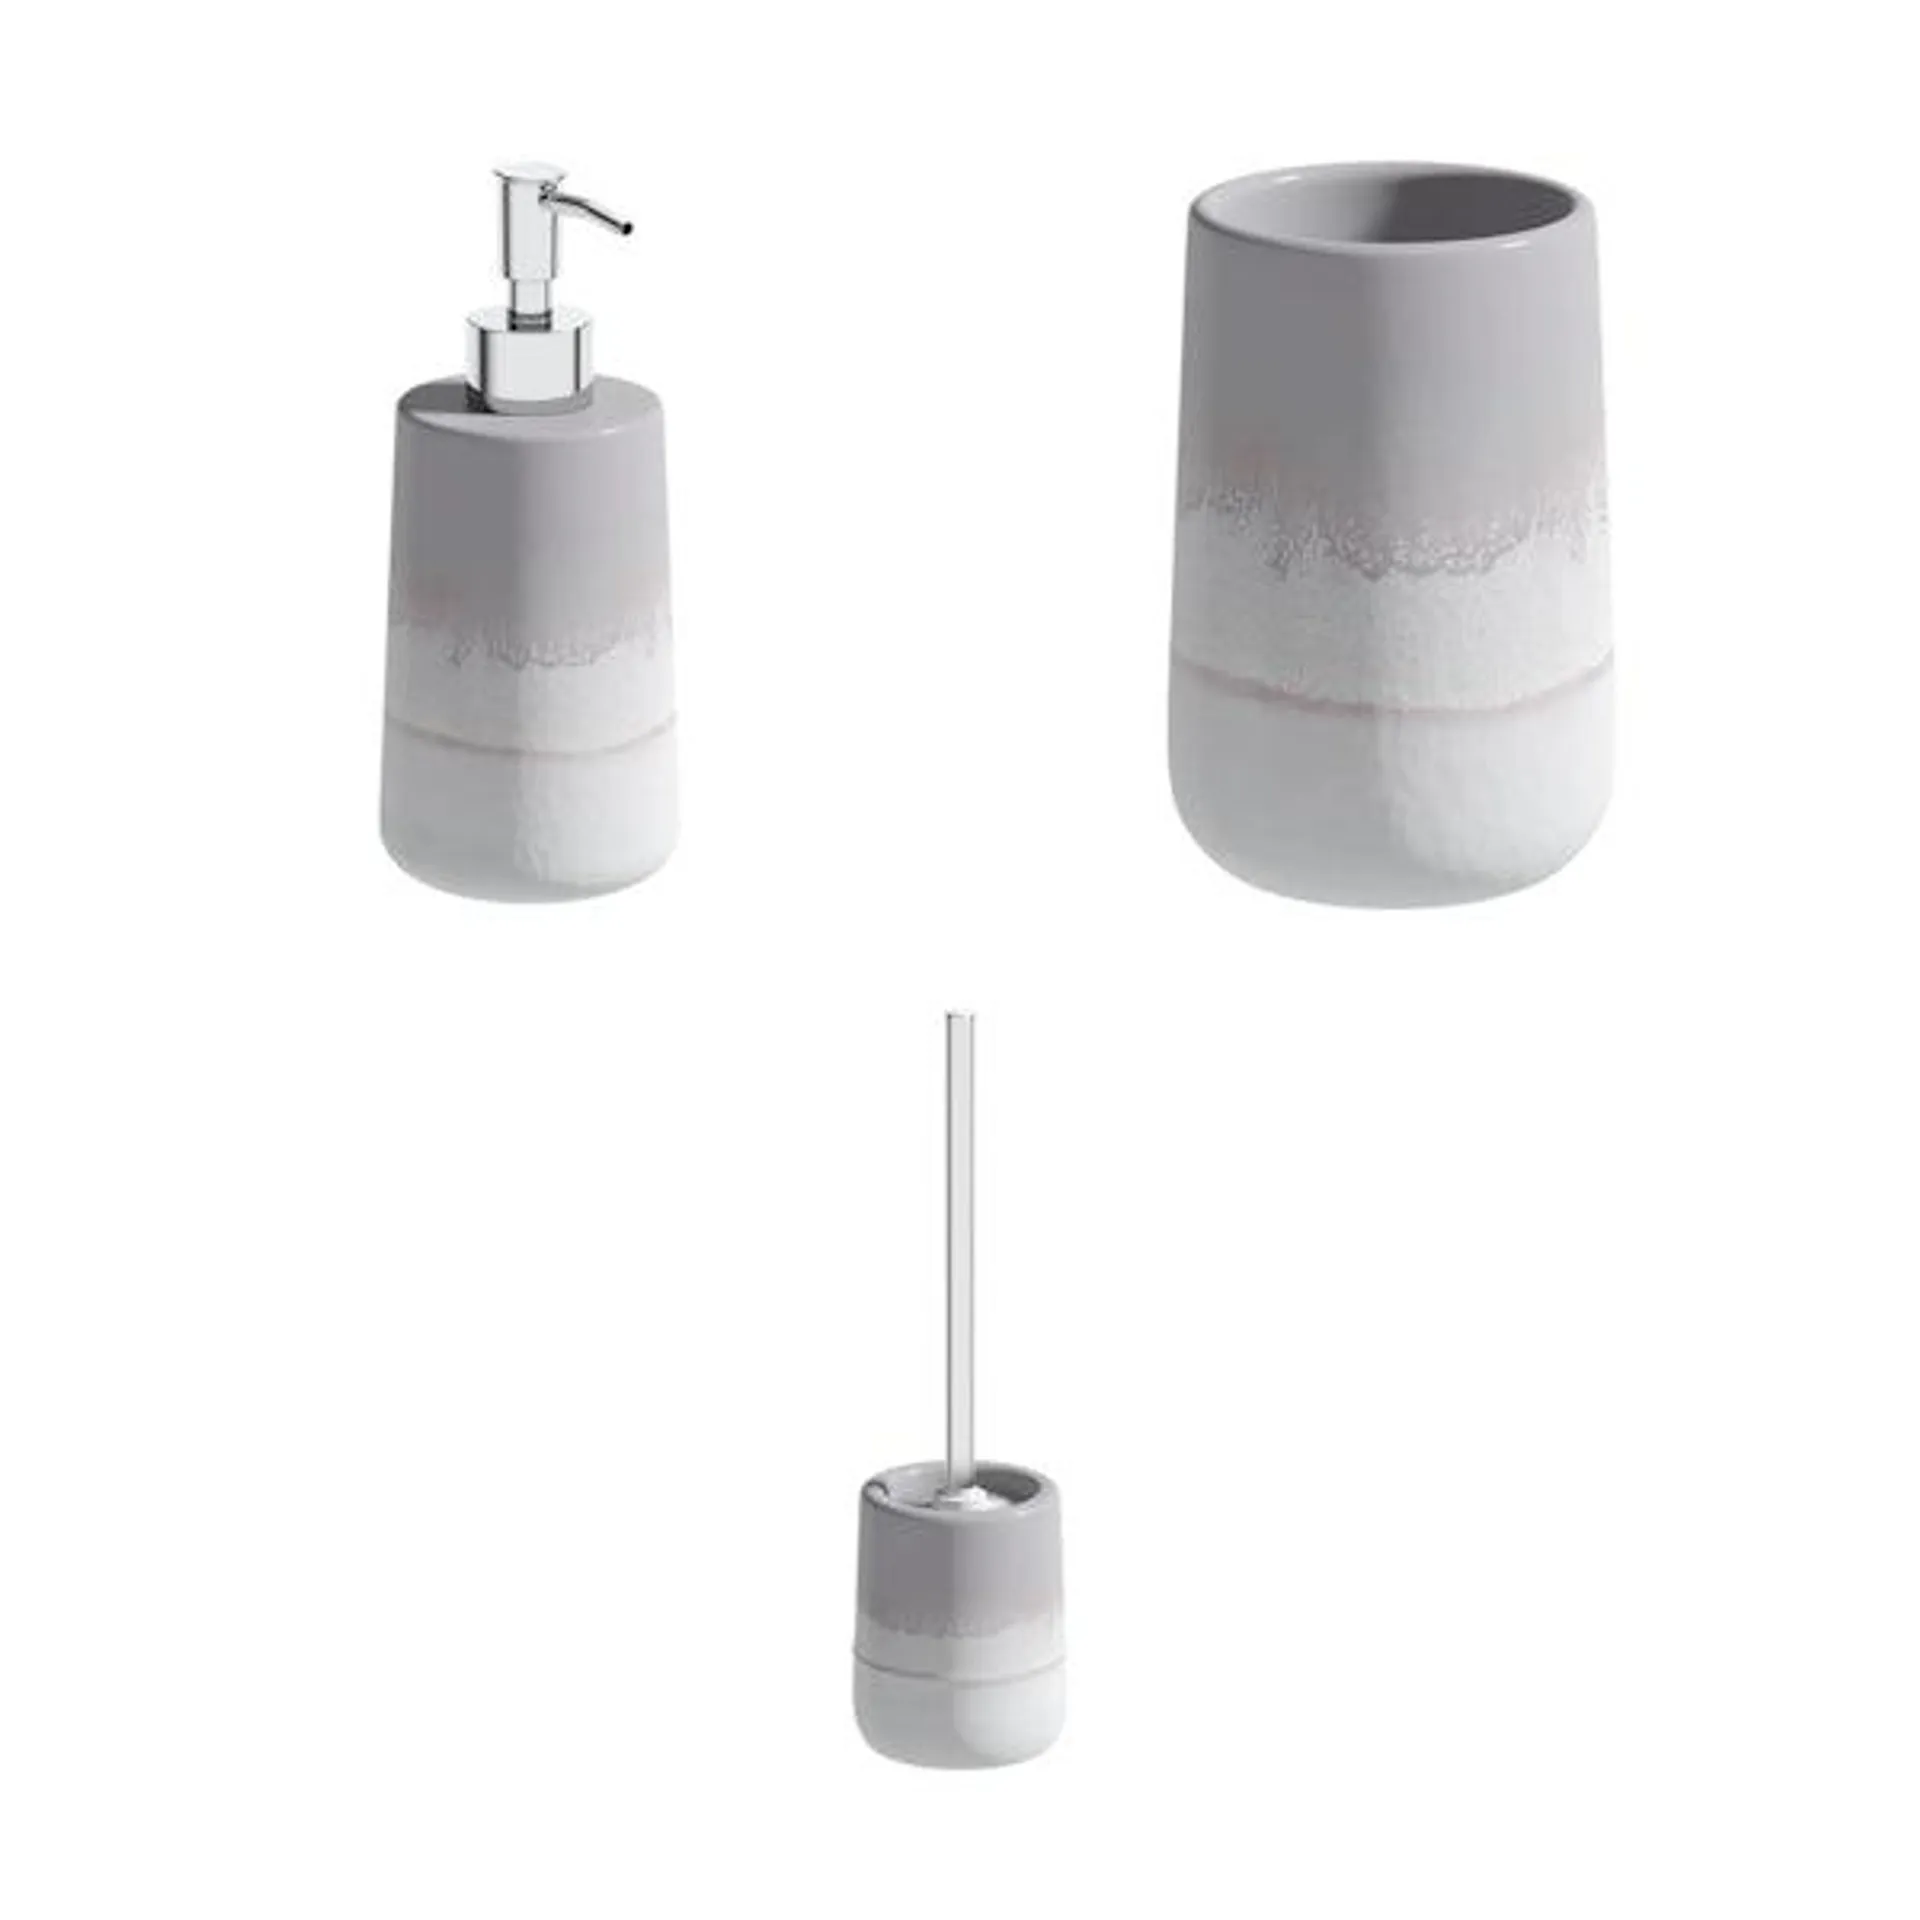 Accents Marloes grey ombre ceramic 3 piece bathroom set